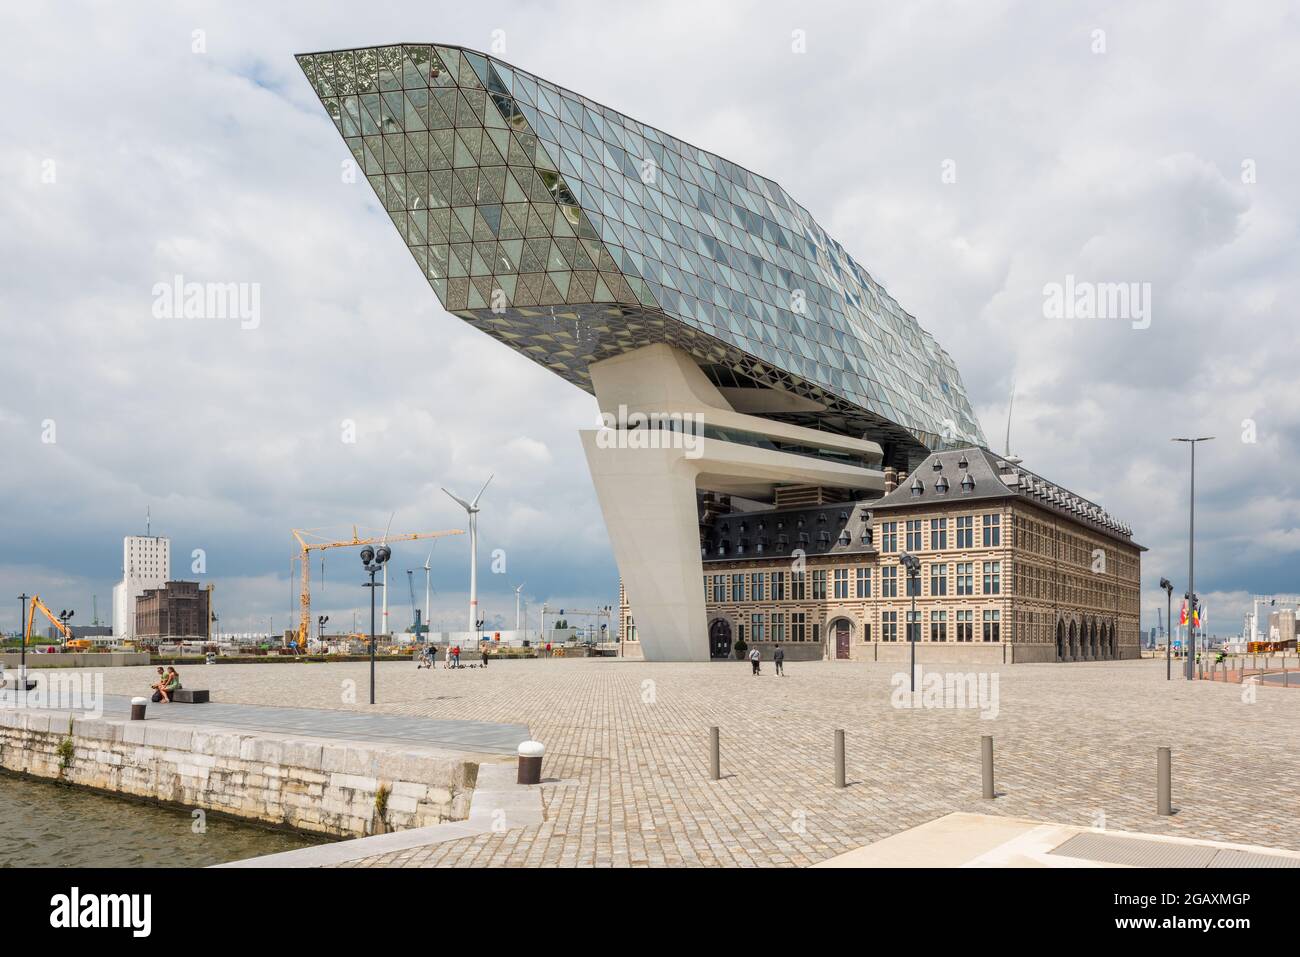 Porto House nel porto di Anversa, Belgio. L'edificio governativo è stato progettato dall'architetto iracheno-britannico Zaha Hadid ed è stato aperto nel 2016 Foto Stock